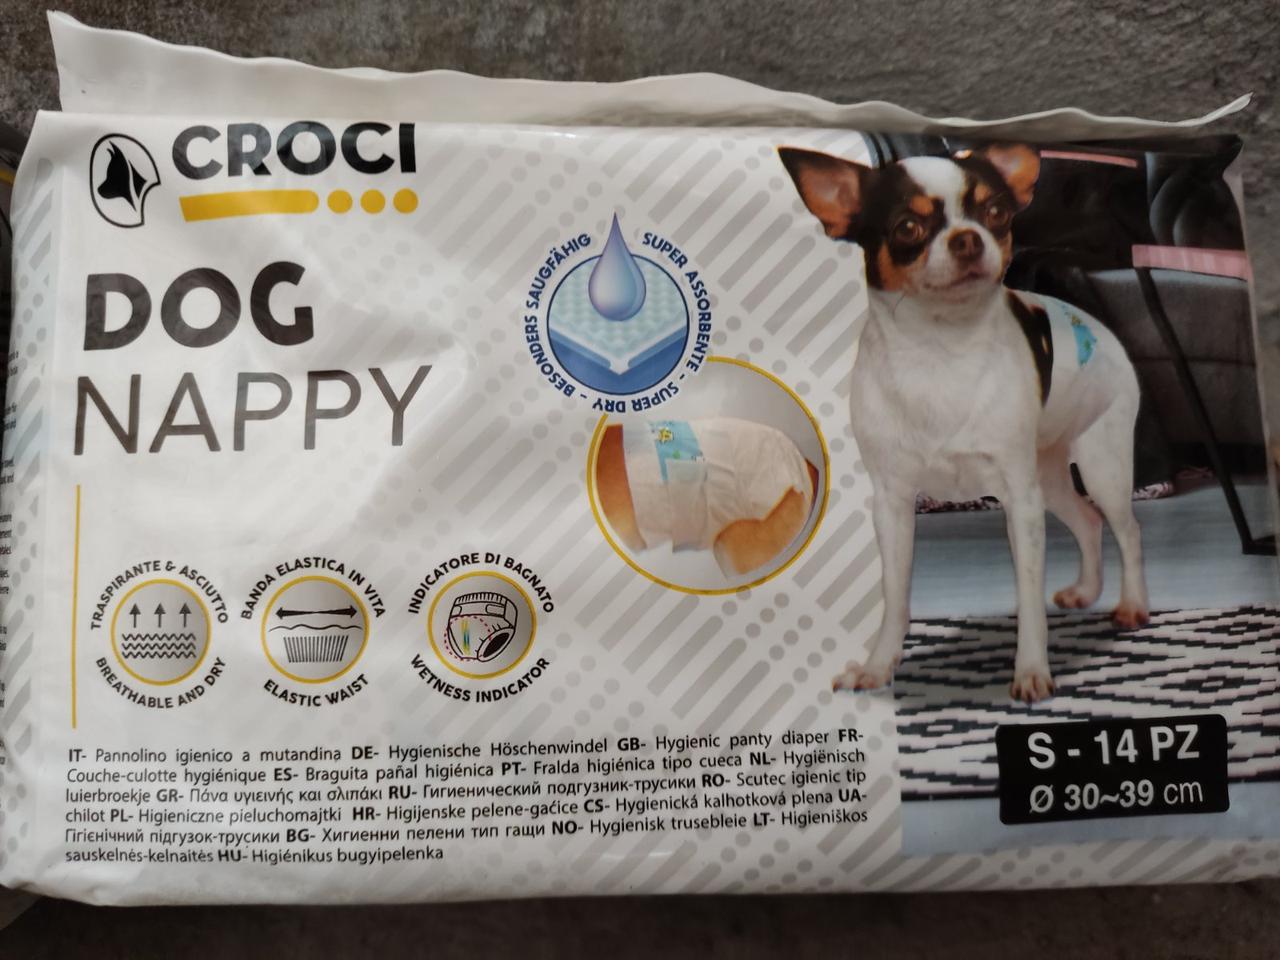 Фото - Прочее для собак Croci Подгузники для собак  Dog Nappy S, вес 2-3 кг, обхват 30-39 см, 14 шт 